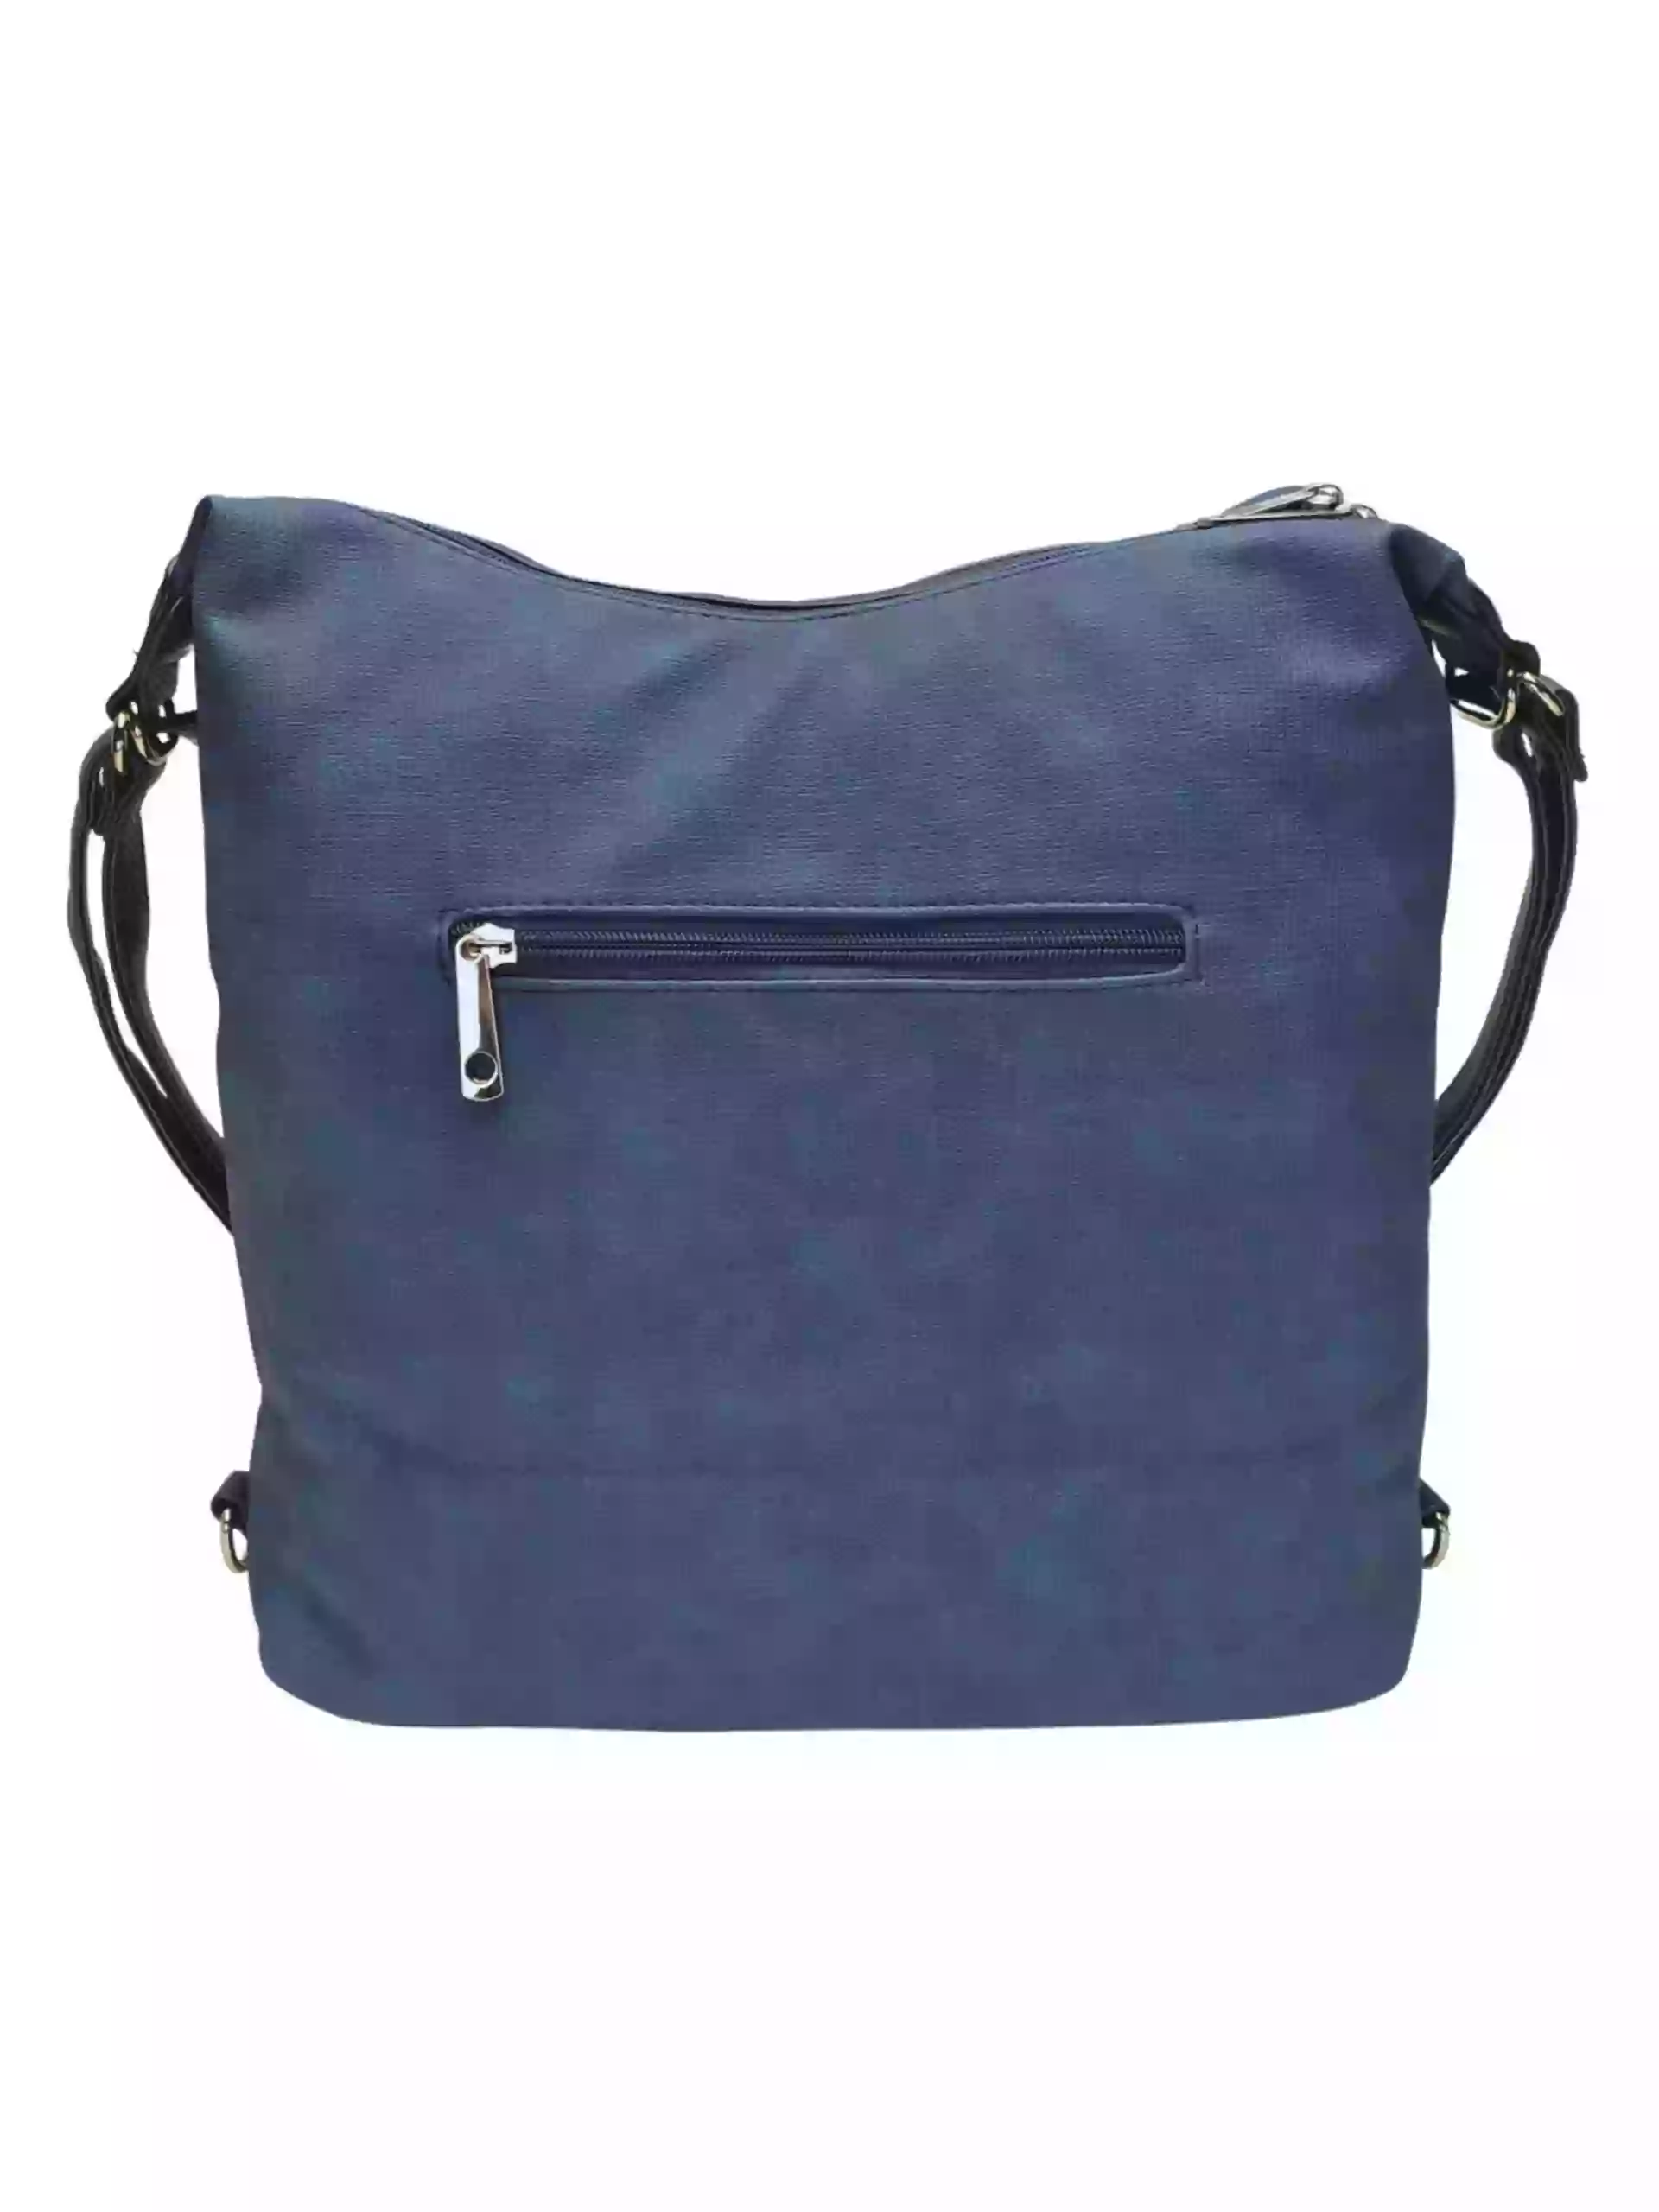 Velký středně modrý kabelko-batoh 2v1 s praktickou kapsou, Tapple, H190010N, zadní strana kabelko-batohu 2v1